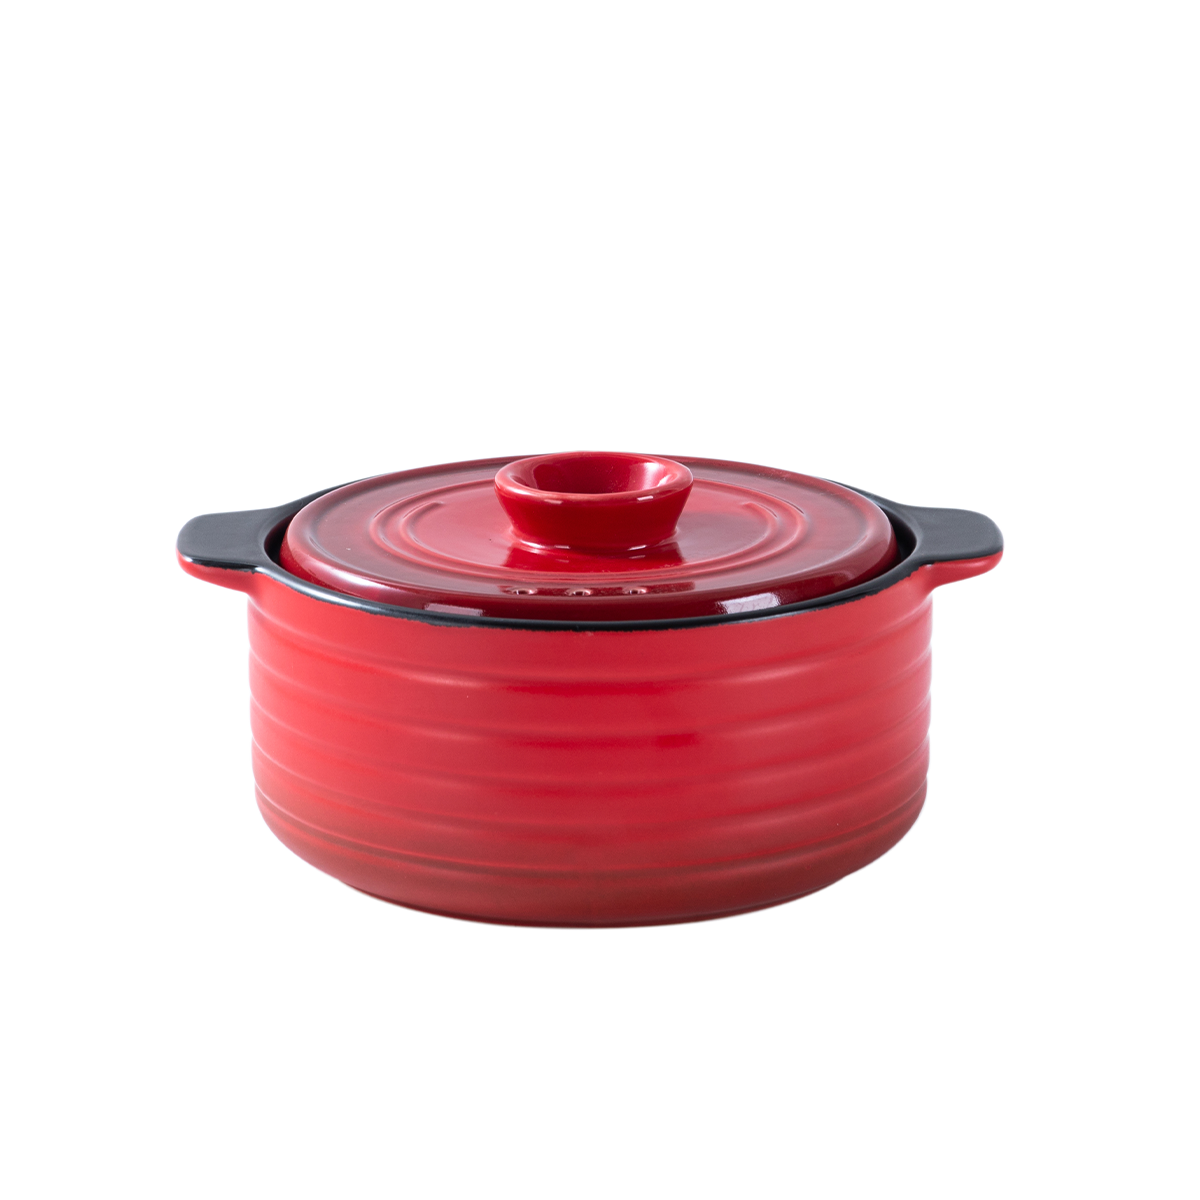 Red Ceramic Direct Fire 1.8 Liter Casserole- Che Brucia